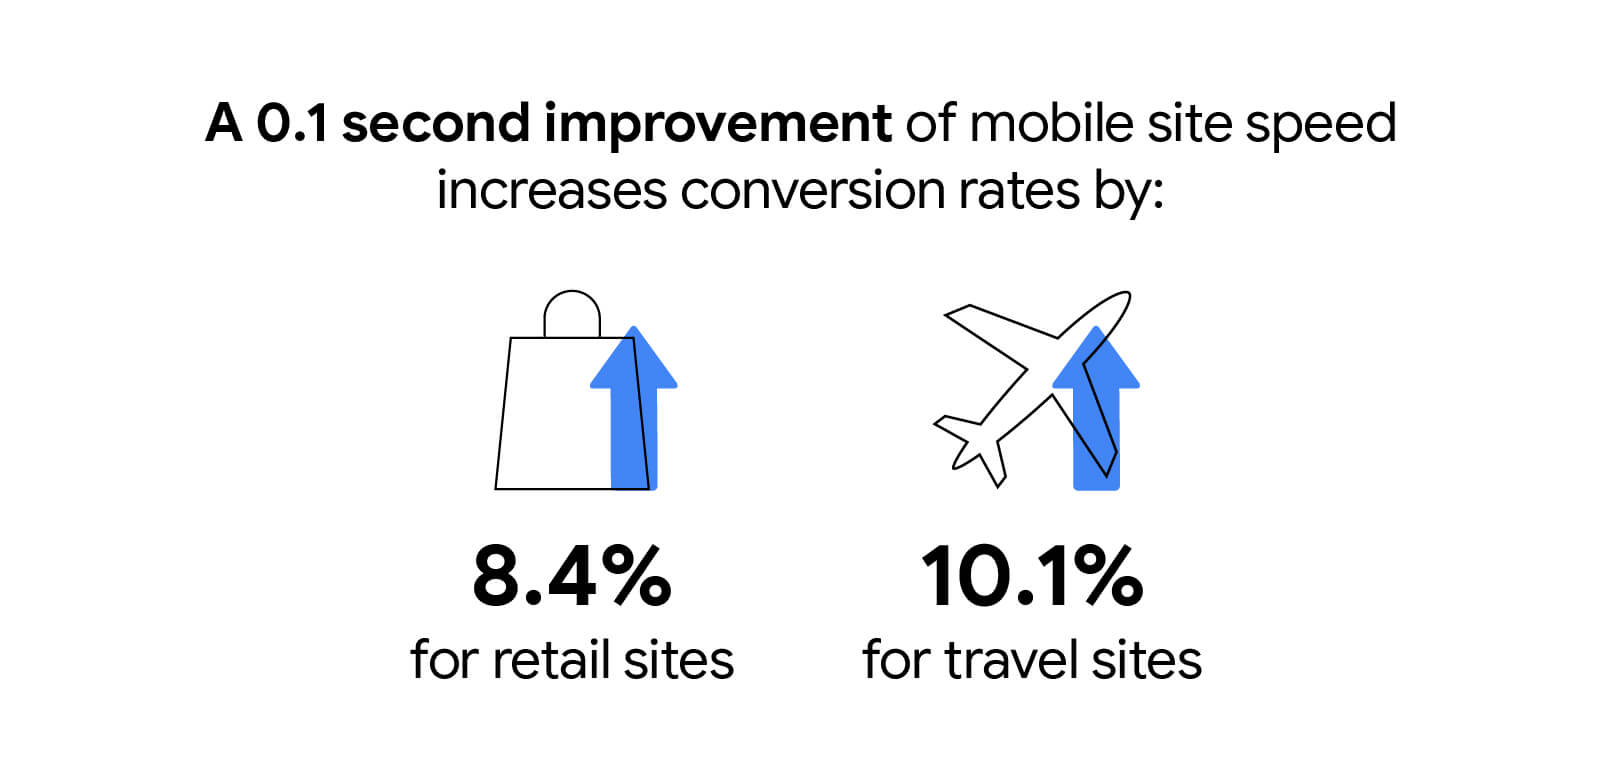 Przyspieszenie działania strony mobilnej o 0,1 sekundy powoduje wzrost współczynników konwersji o 8,4% w przypadku sklepów detalicznych i o 10,1% w przypadku stron turystycznych.